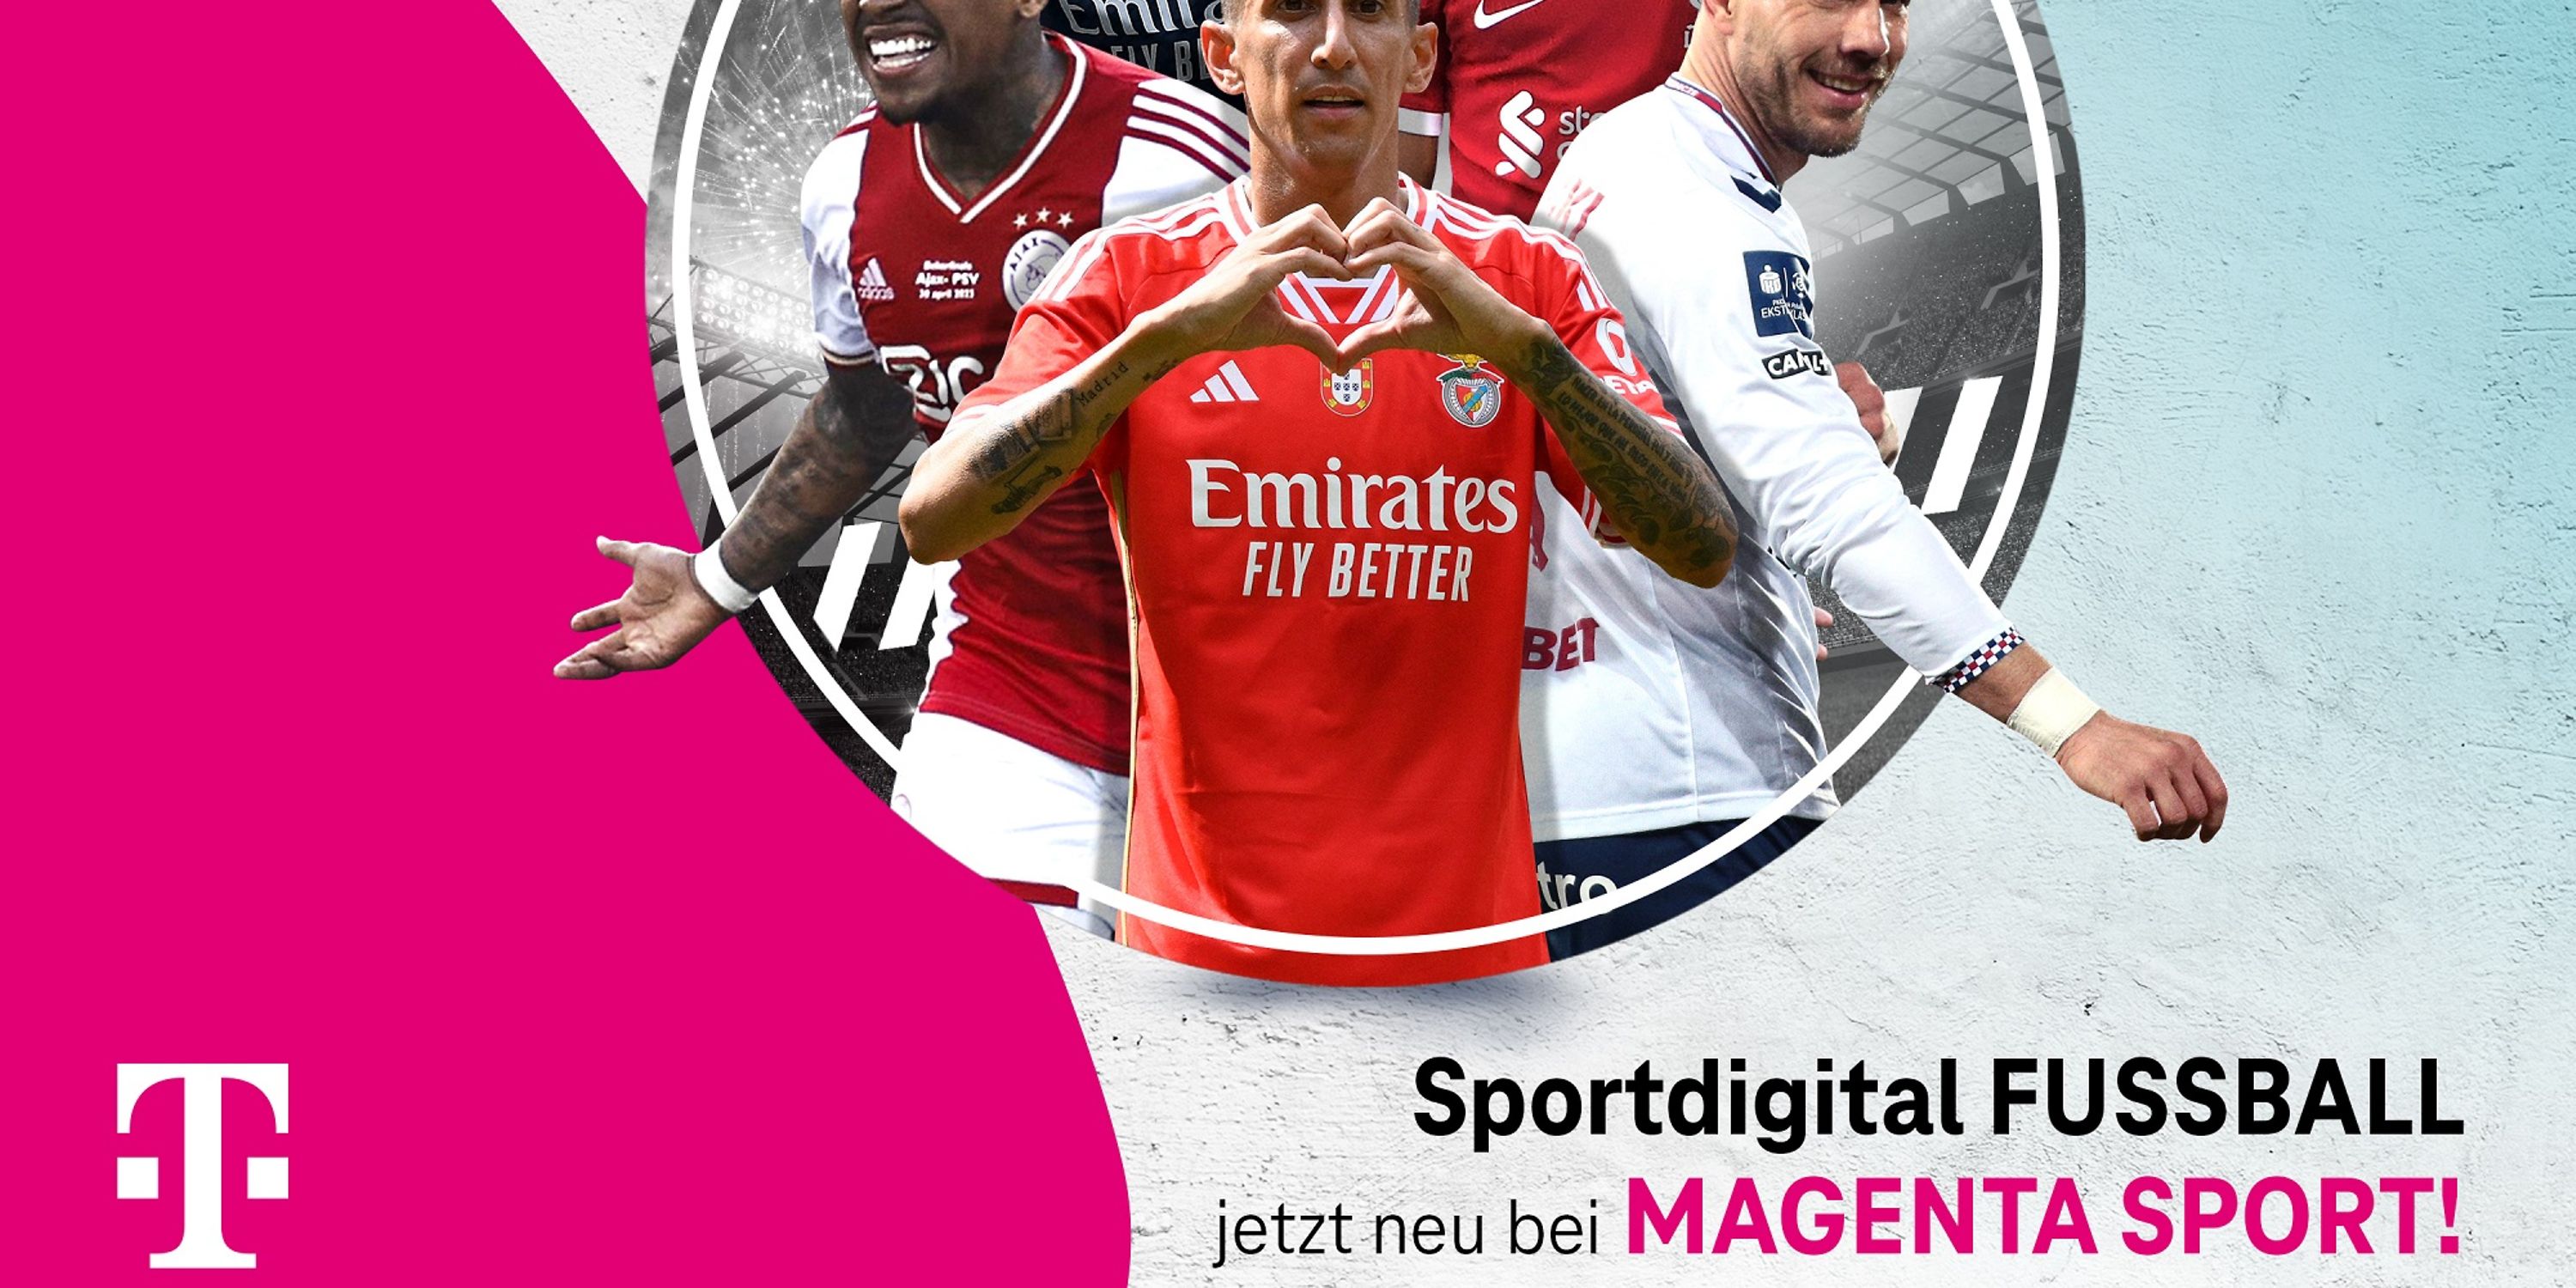 Rund 1.000 Live-Spiele zusätzlich! MagentaSport integriert Sportdigital FUSSBALL komplett Deutsche Telekom